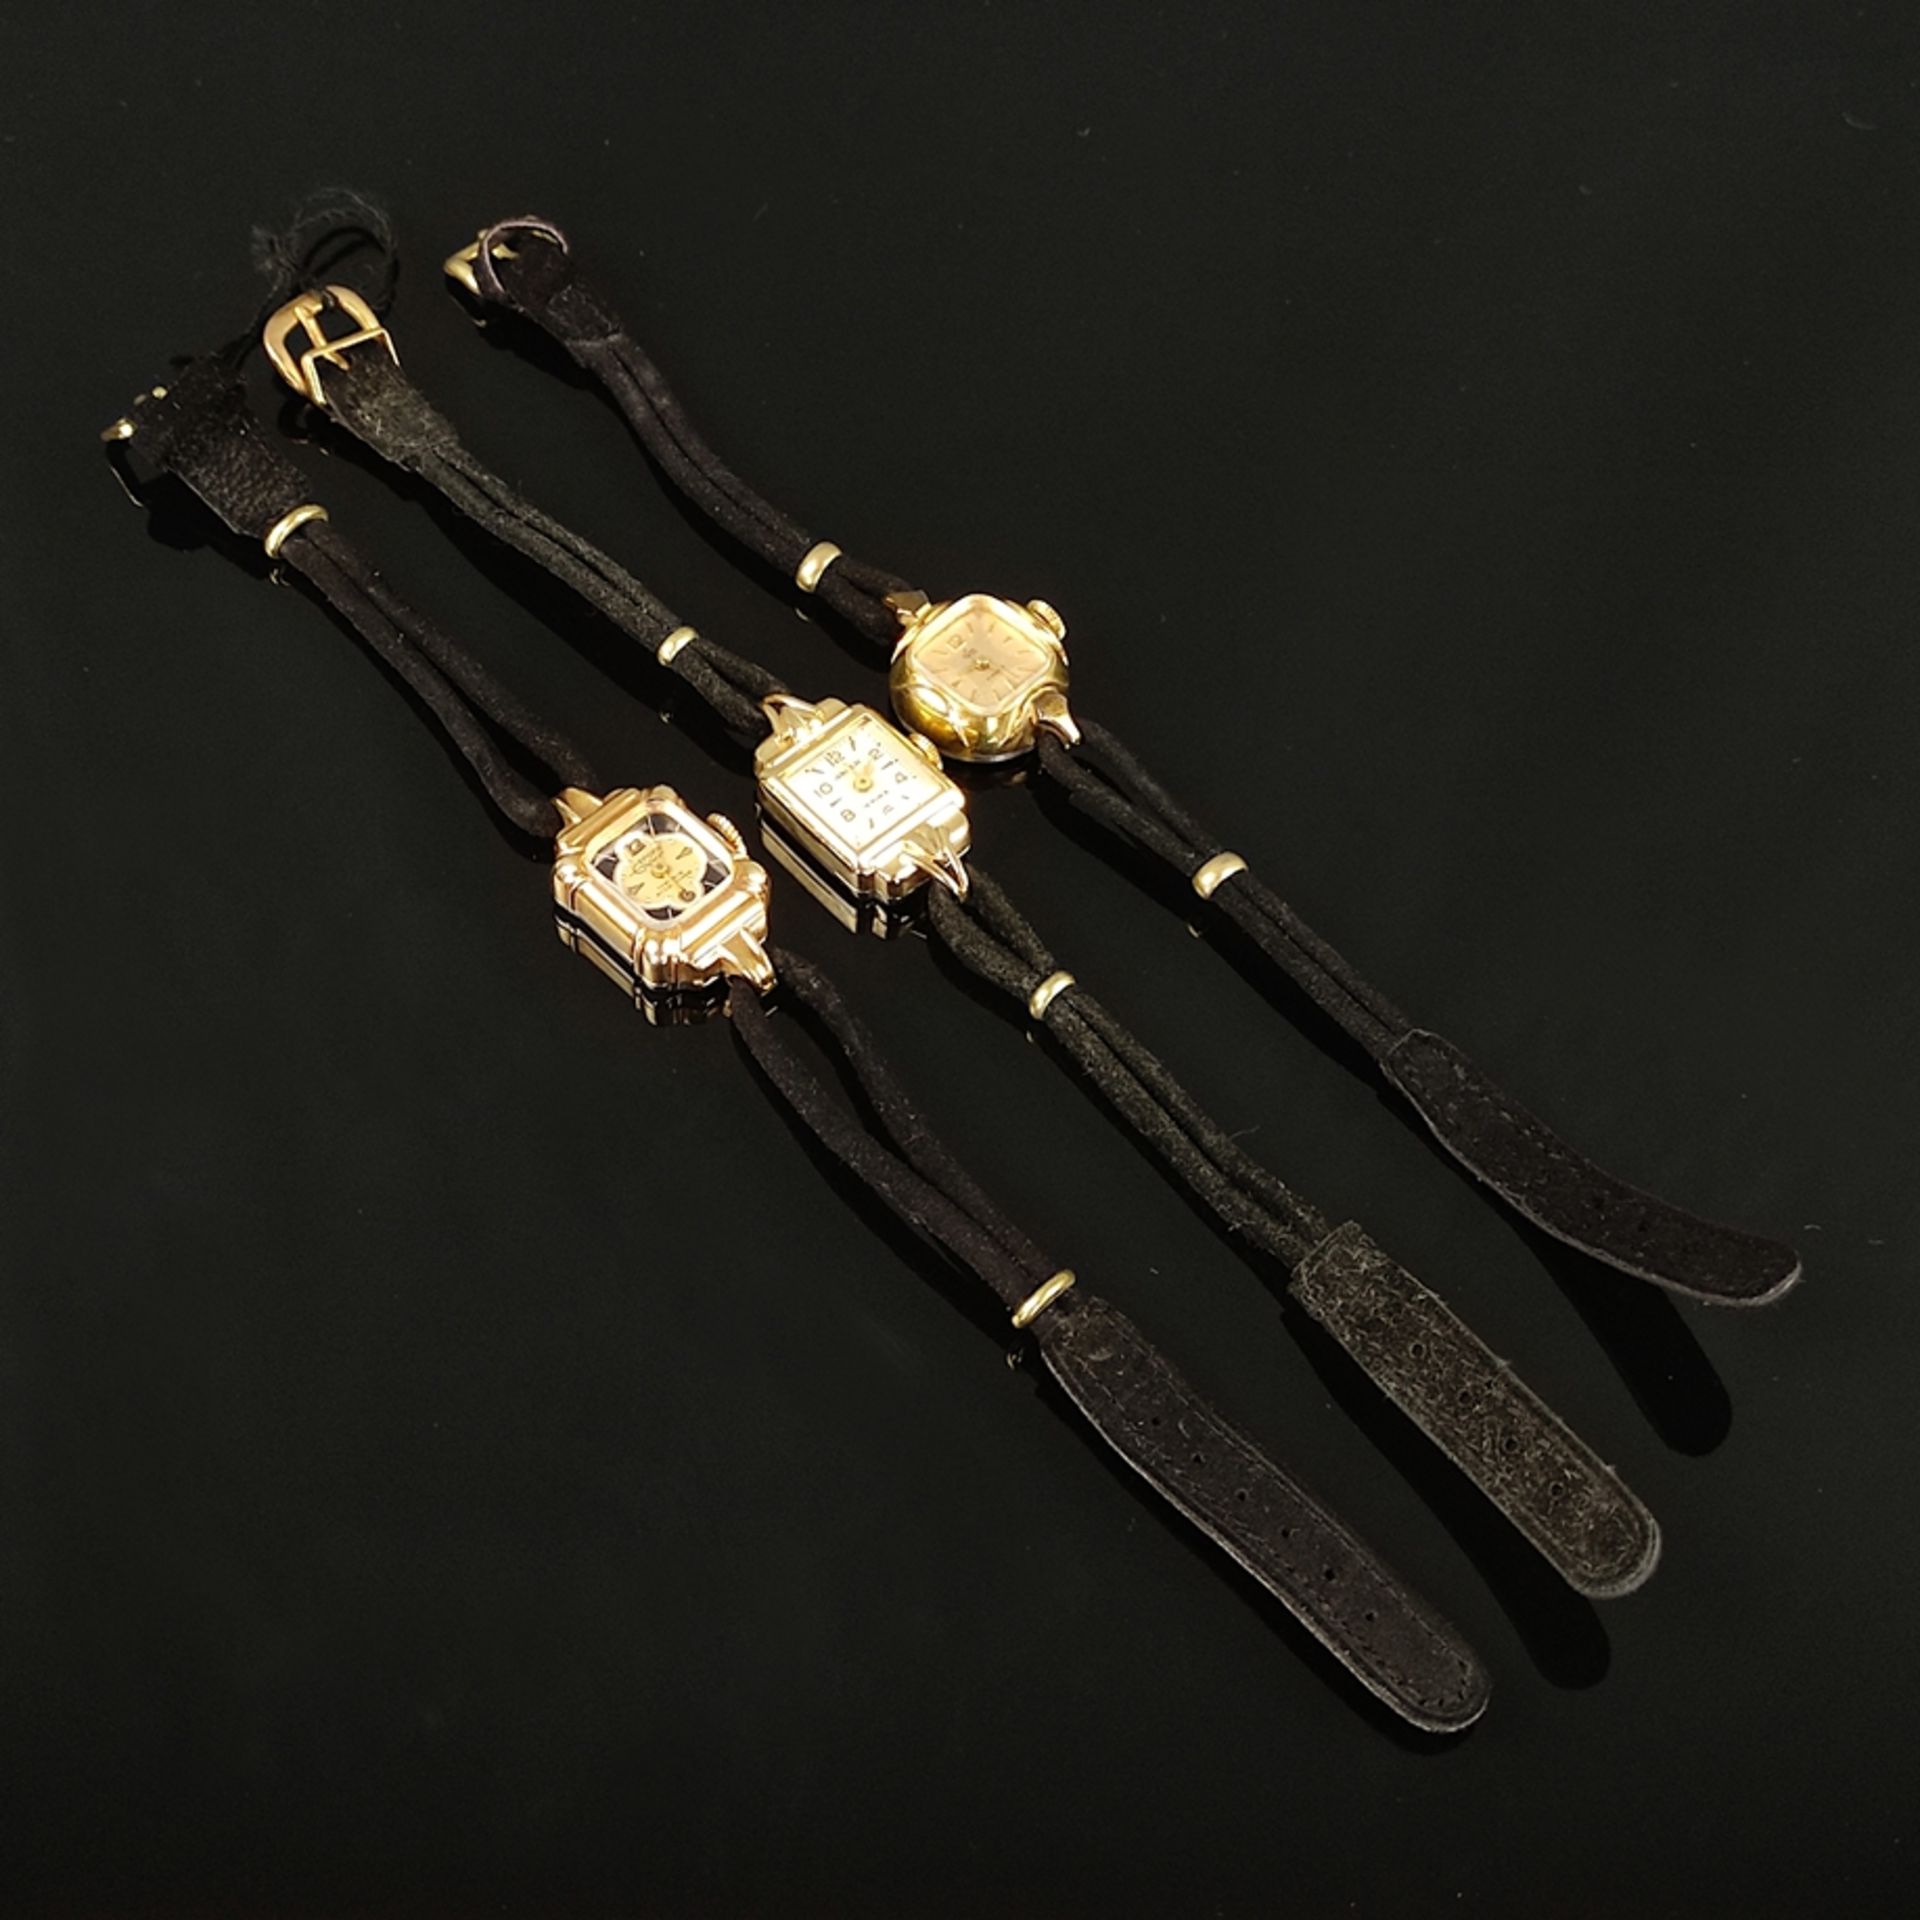 3 Damenarmbanduhren, Anker, Epora und Kfm, vergoldete Gehäuse, teilweise mit arabischen Ziffern und